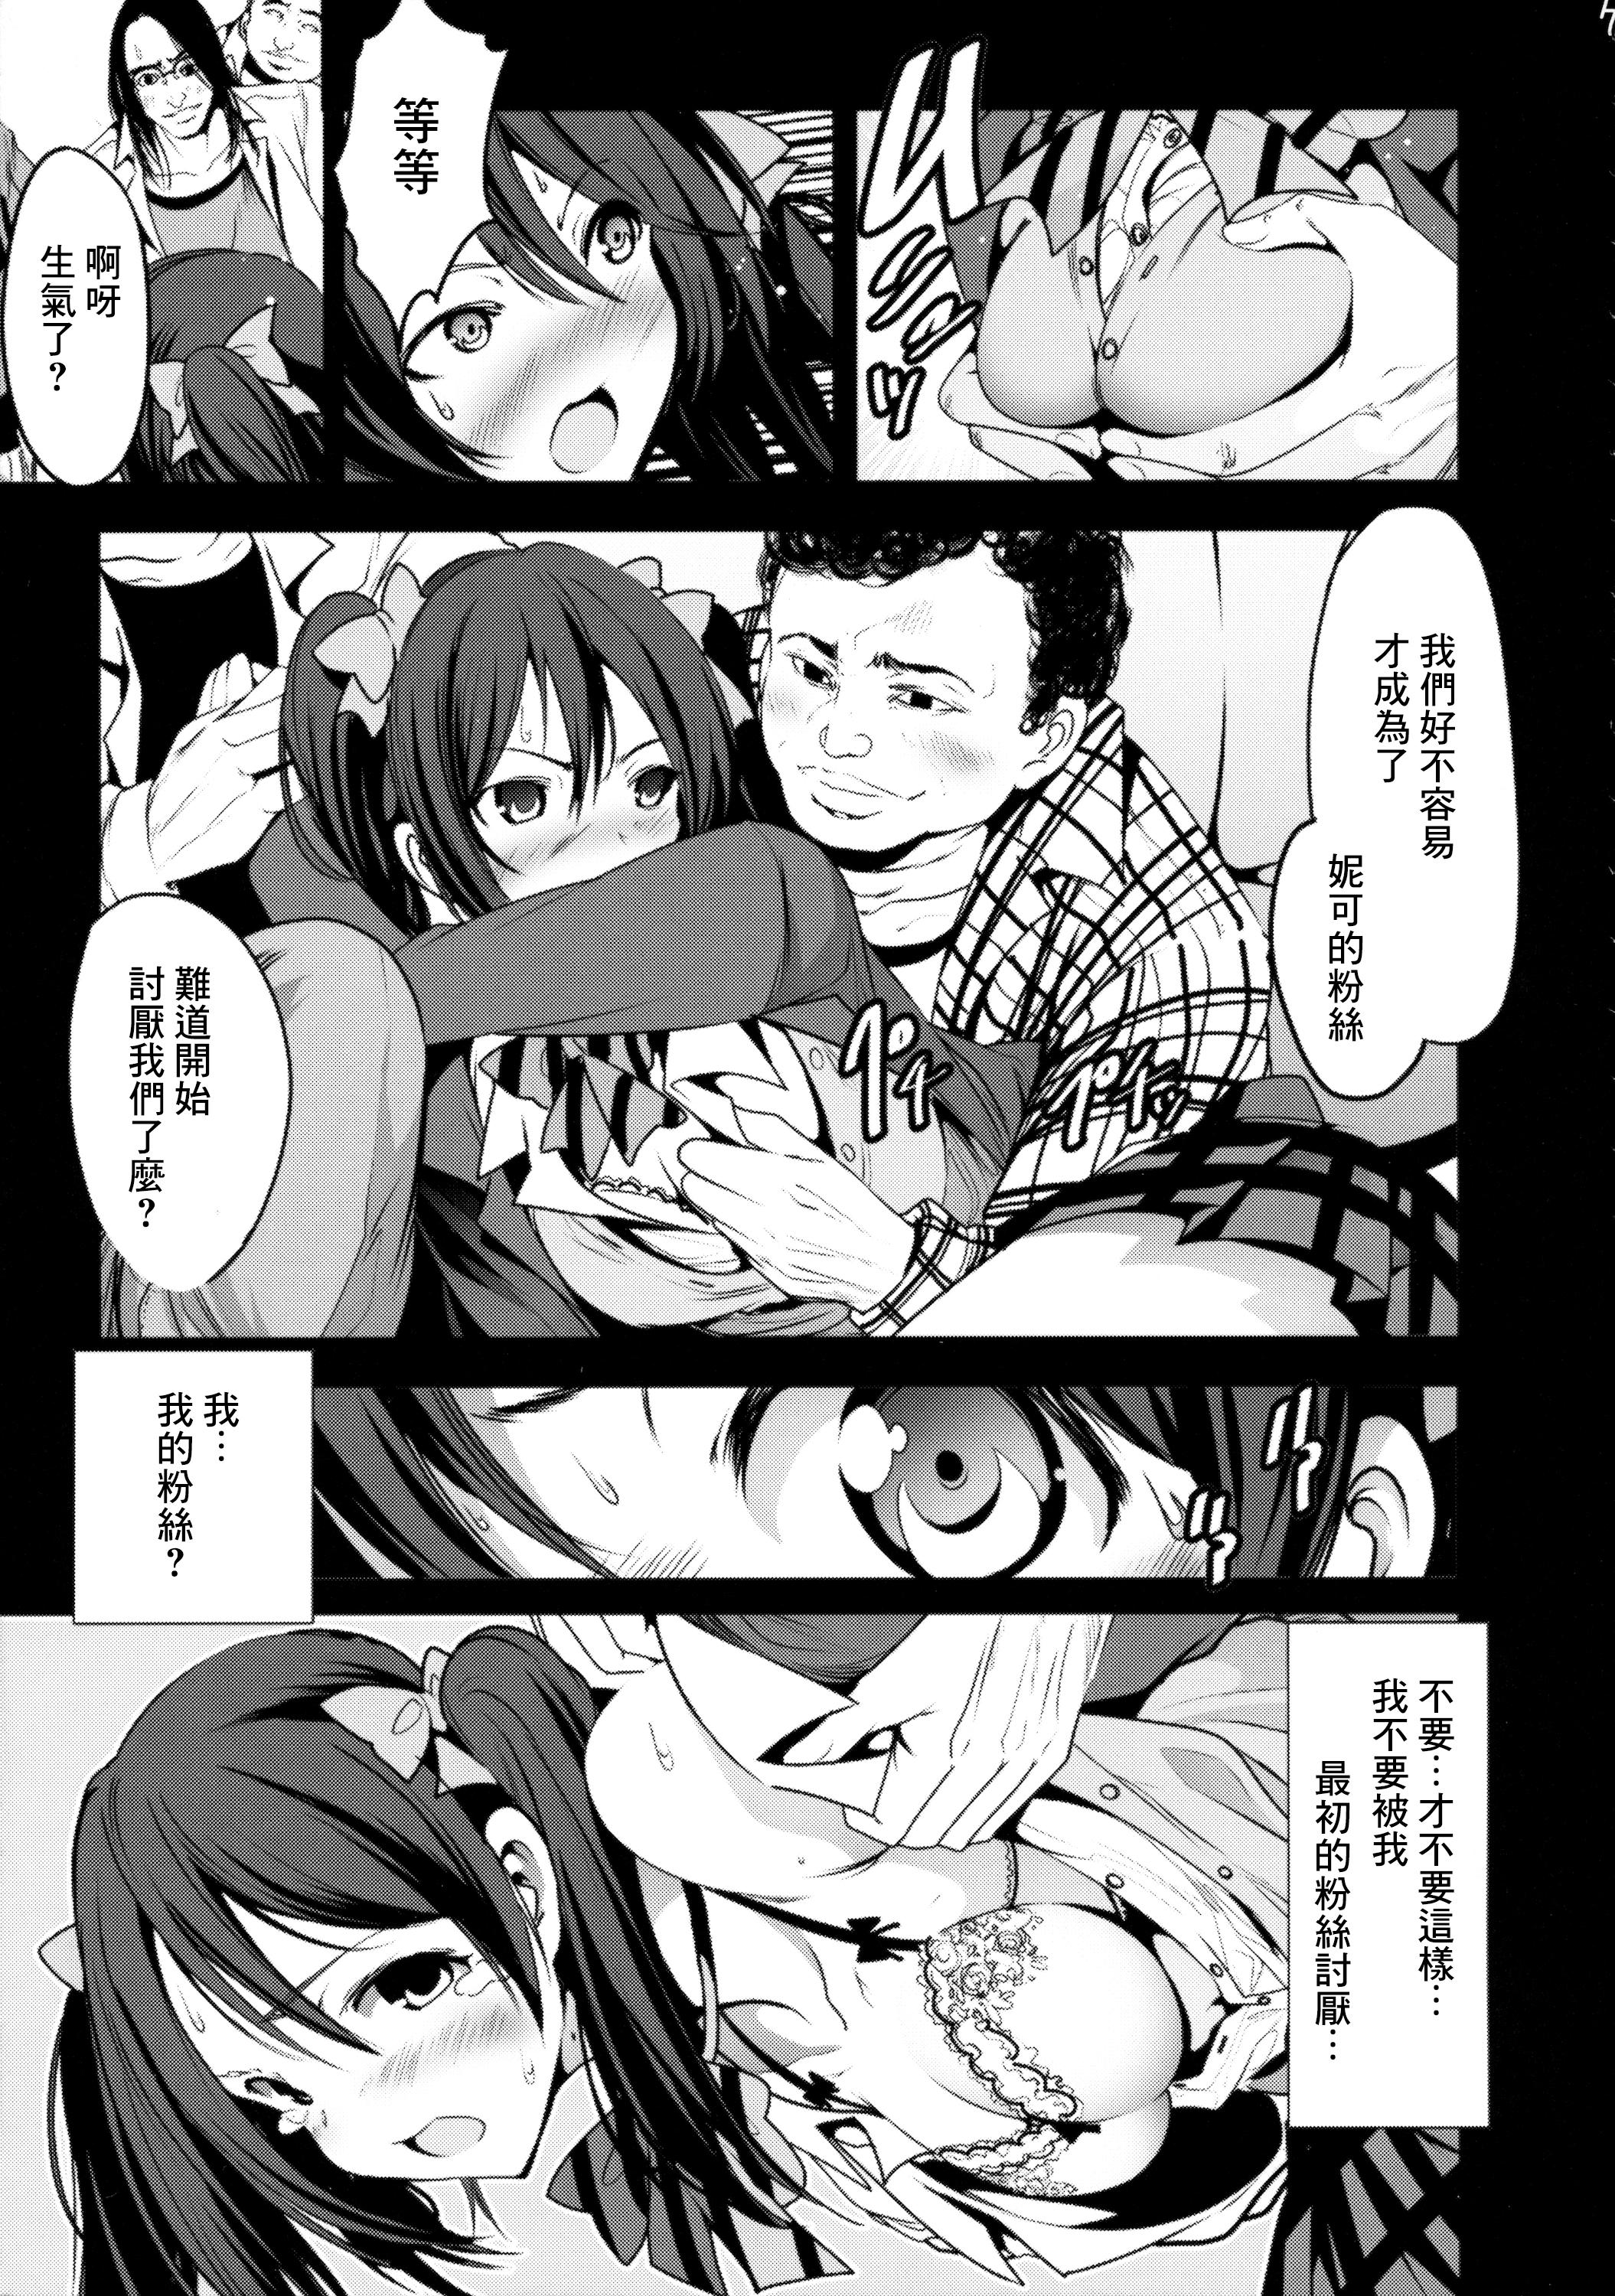 Sweet School Idol Intaishite, OtaCir no Hime Hajimemashita - Love live Porno 18 - Page 8